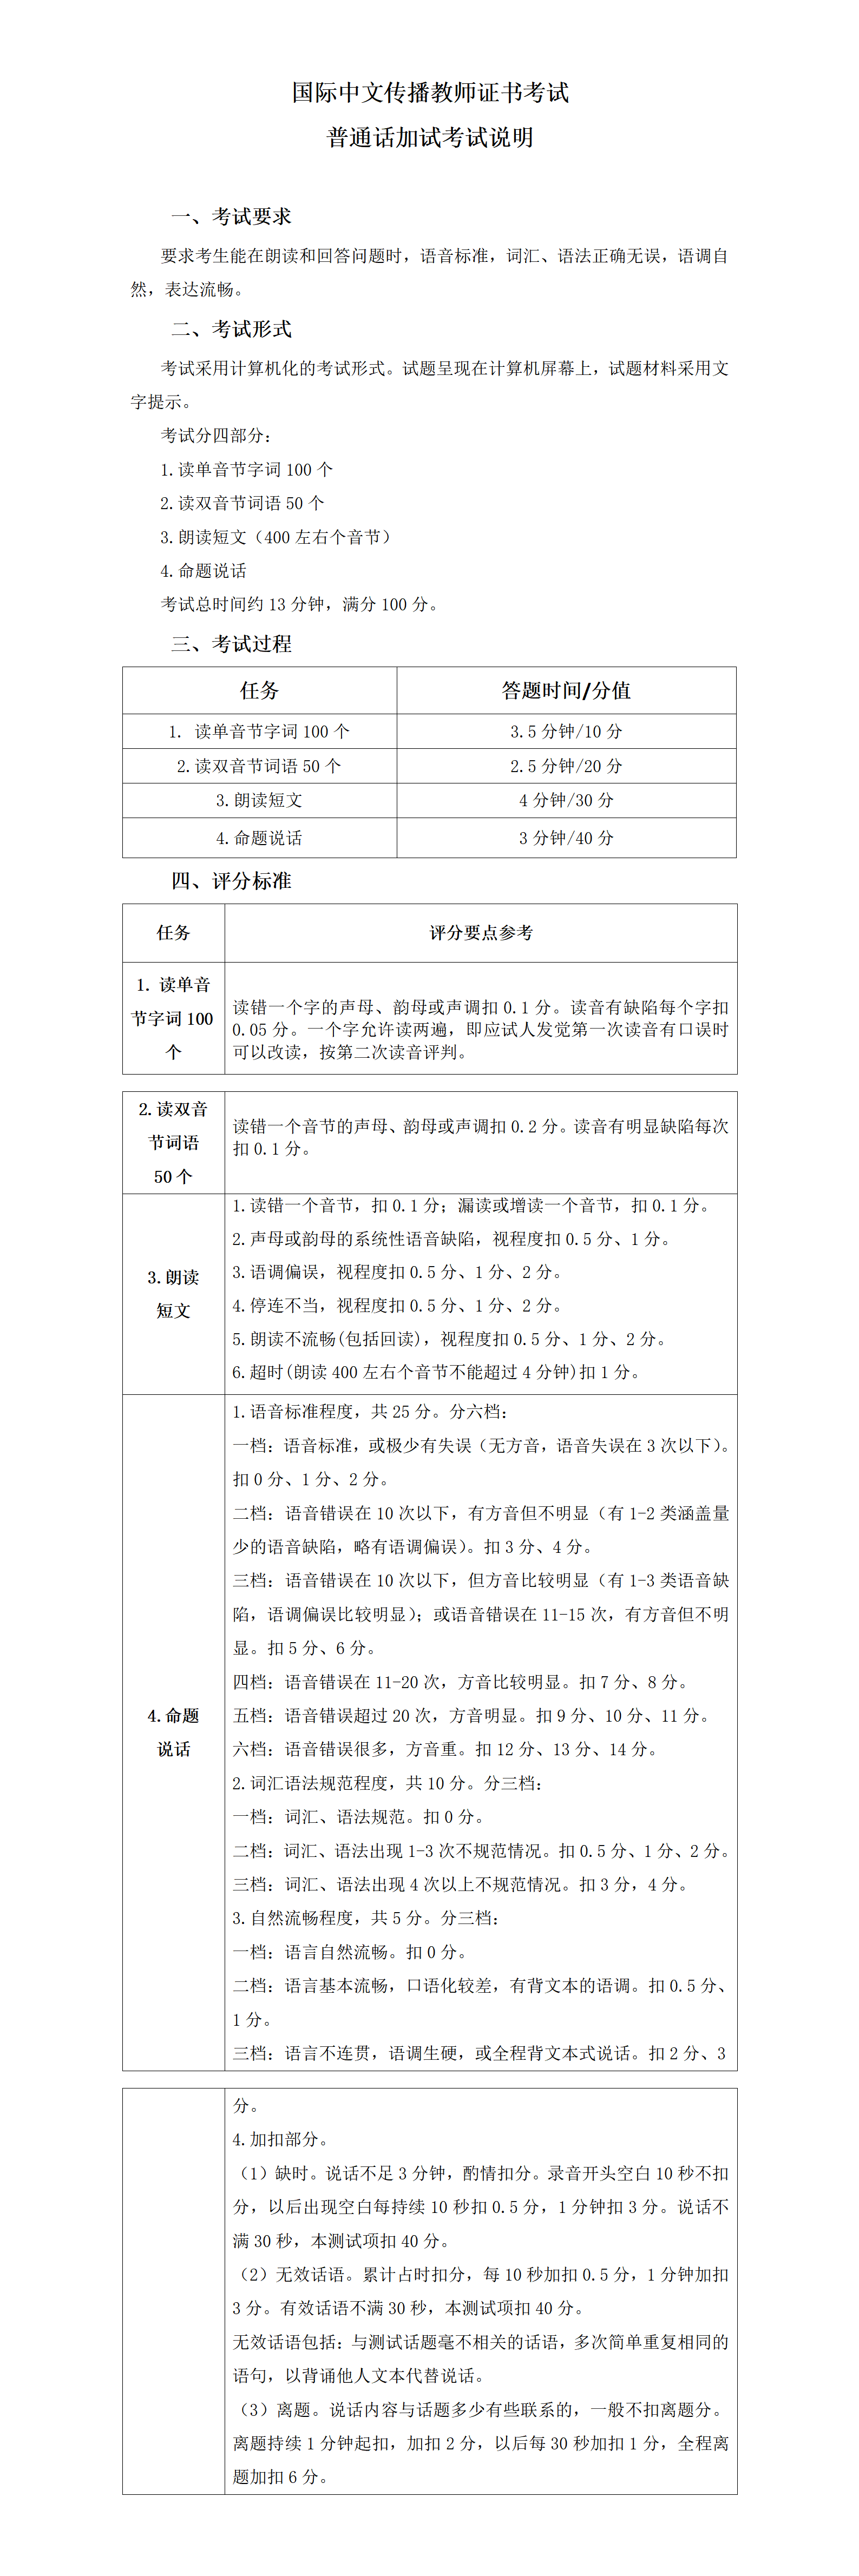 【20220623】国际中文传播教师证书考试普通话加试说明_01